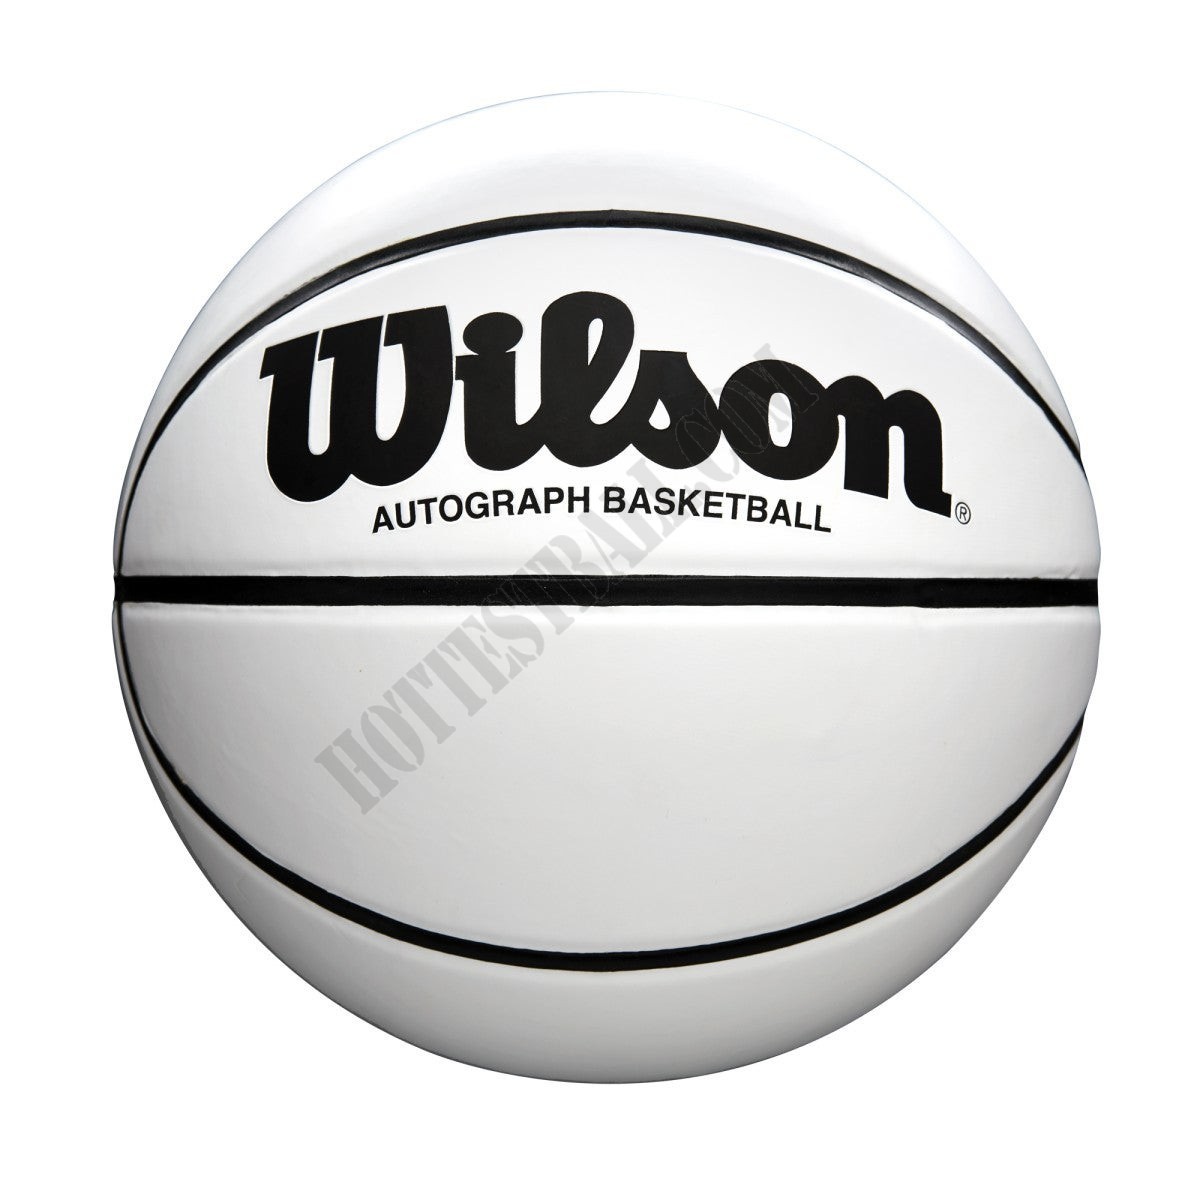 Wilson Autograph Basketball - Wilson Discount Store - Wilson Autograph Basketball - Wilson Discount Store